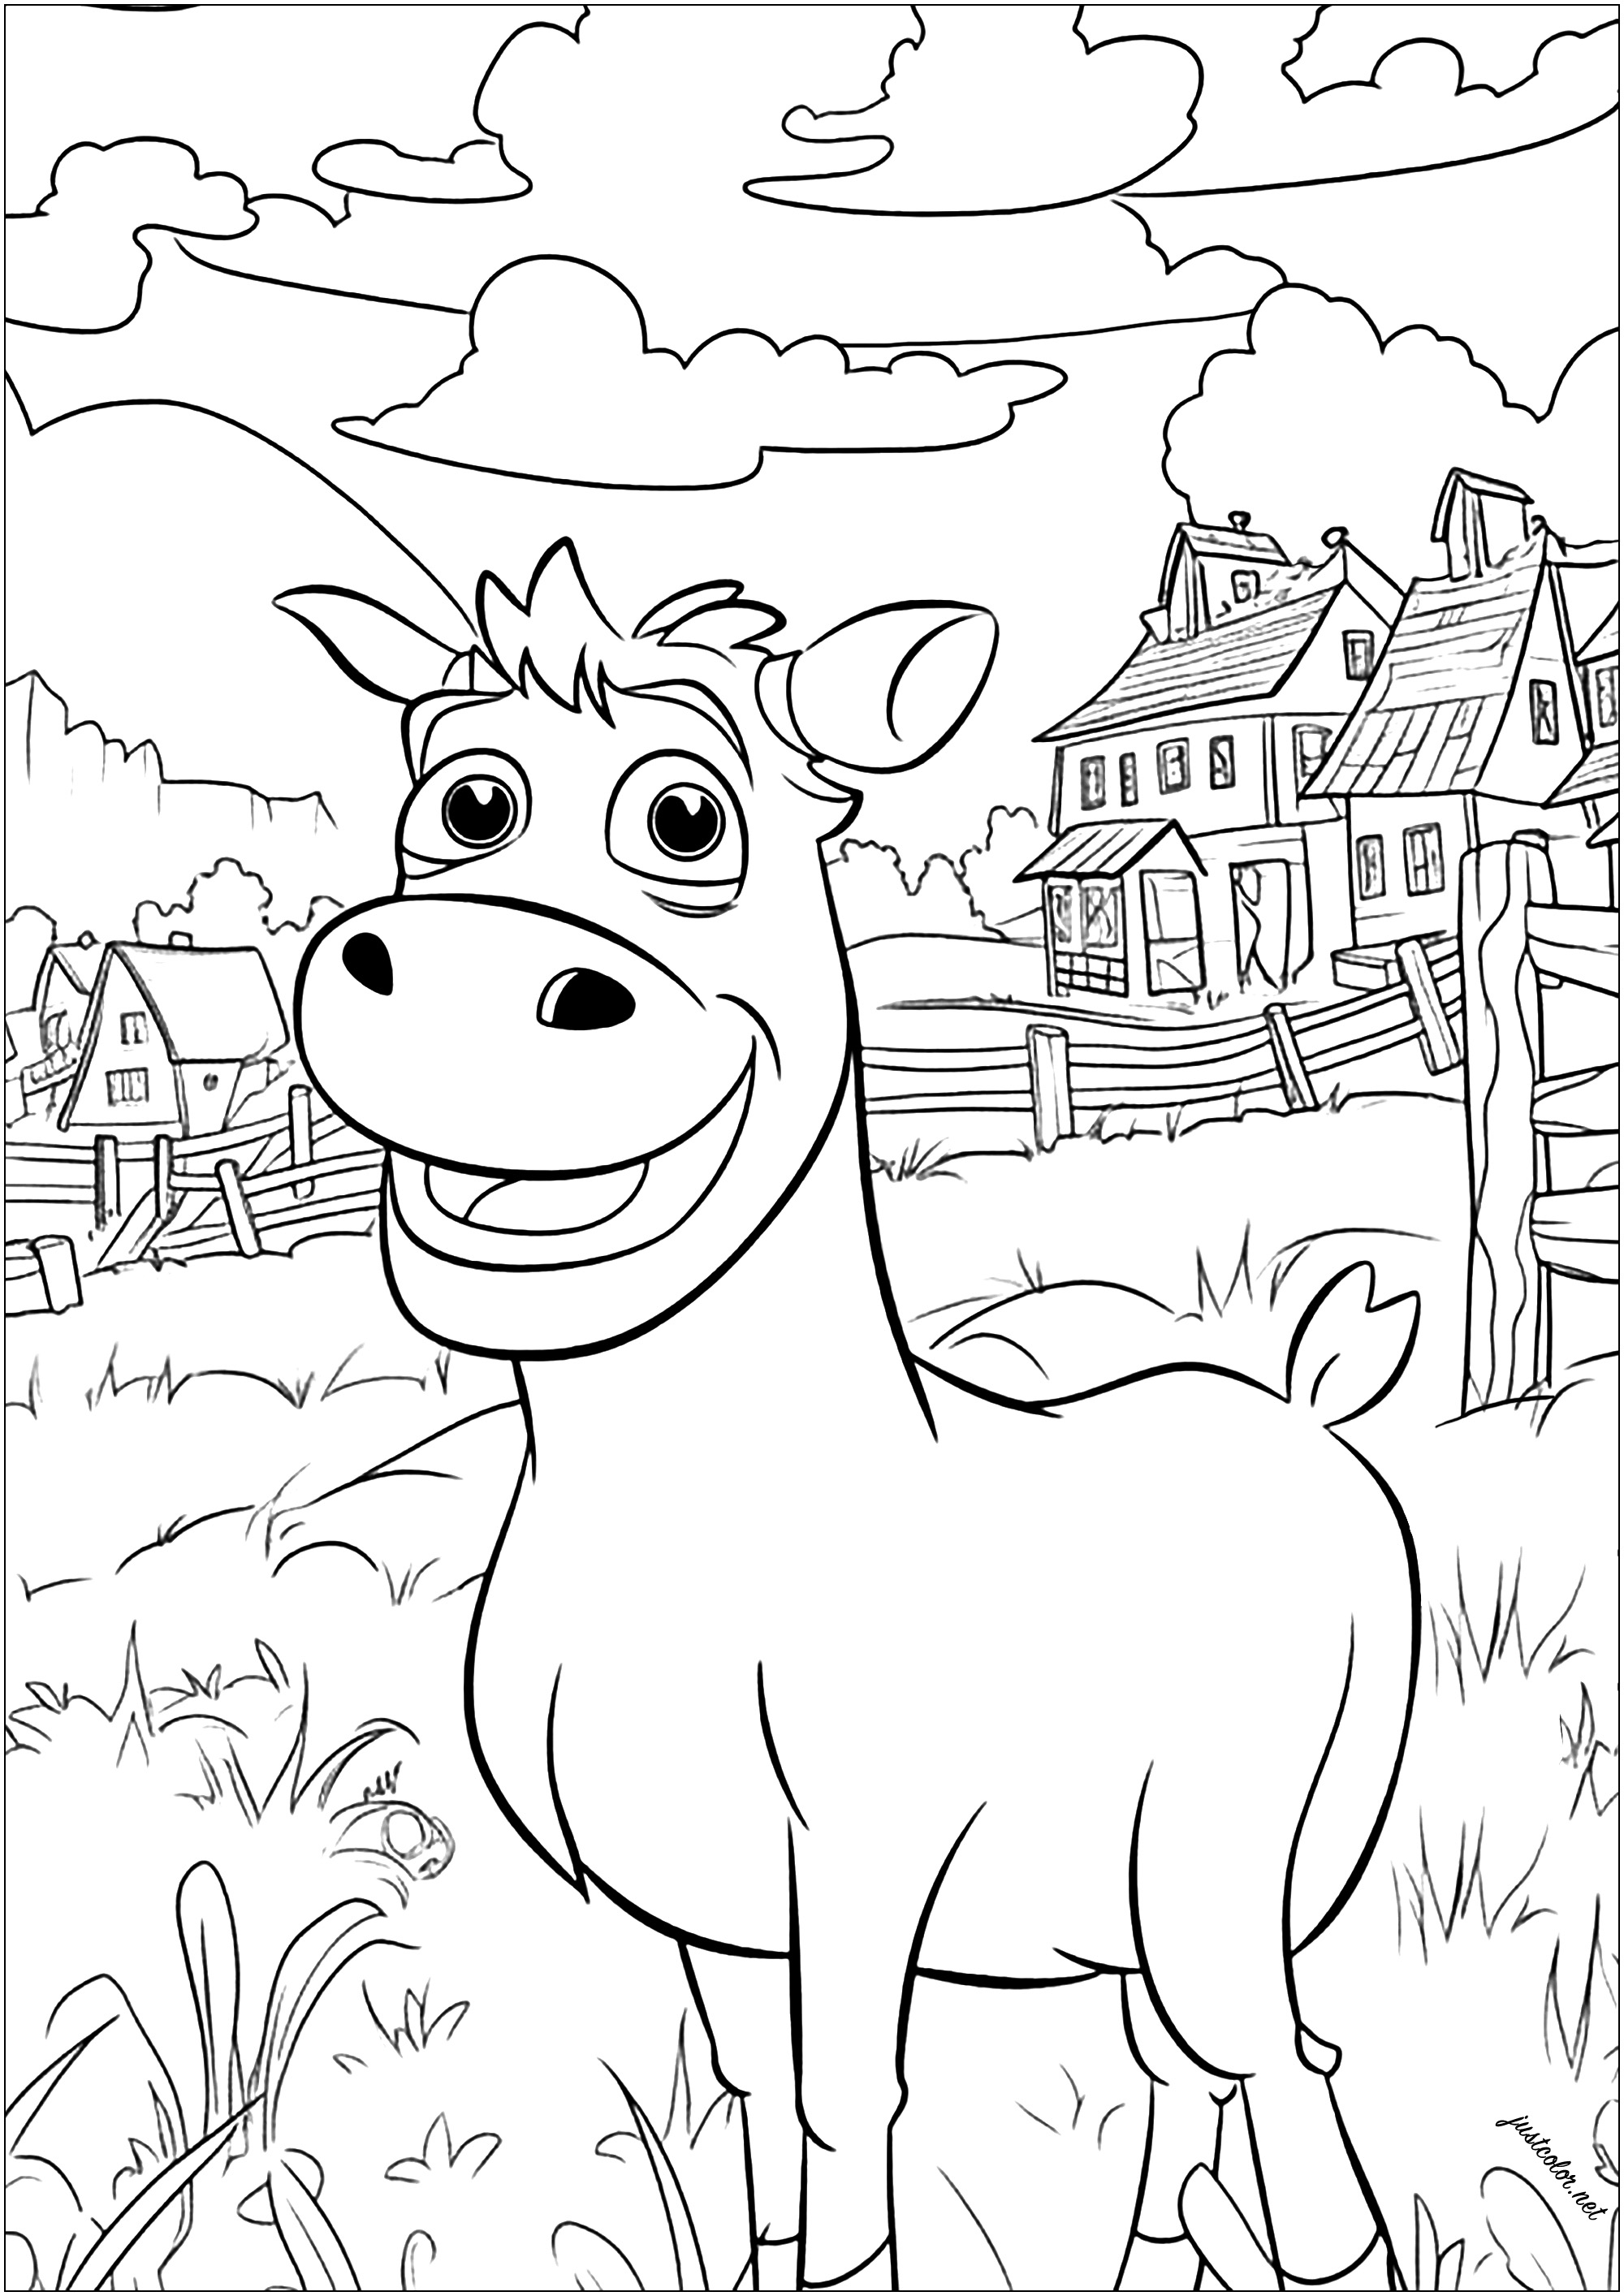 Bonita vaca para colorearEsta simpática vaca está en su campo de hierba alta, con casas y una granja tradicional de fondo.